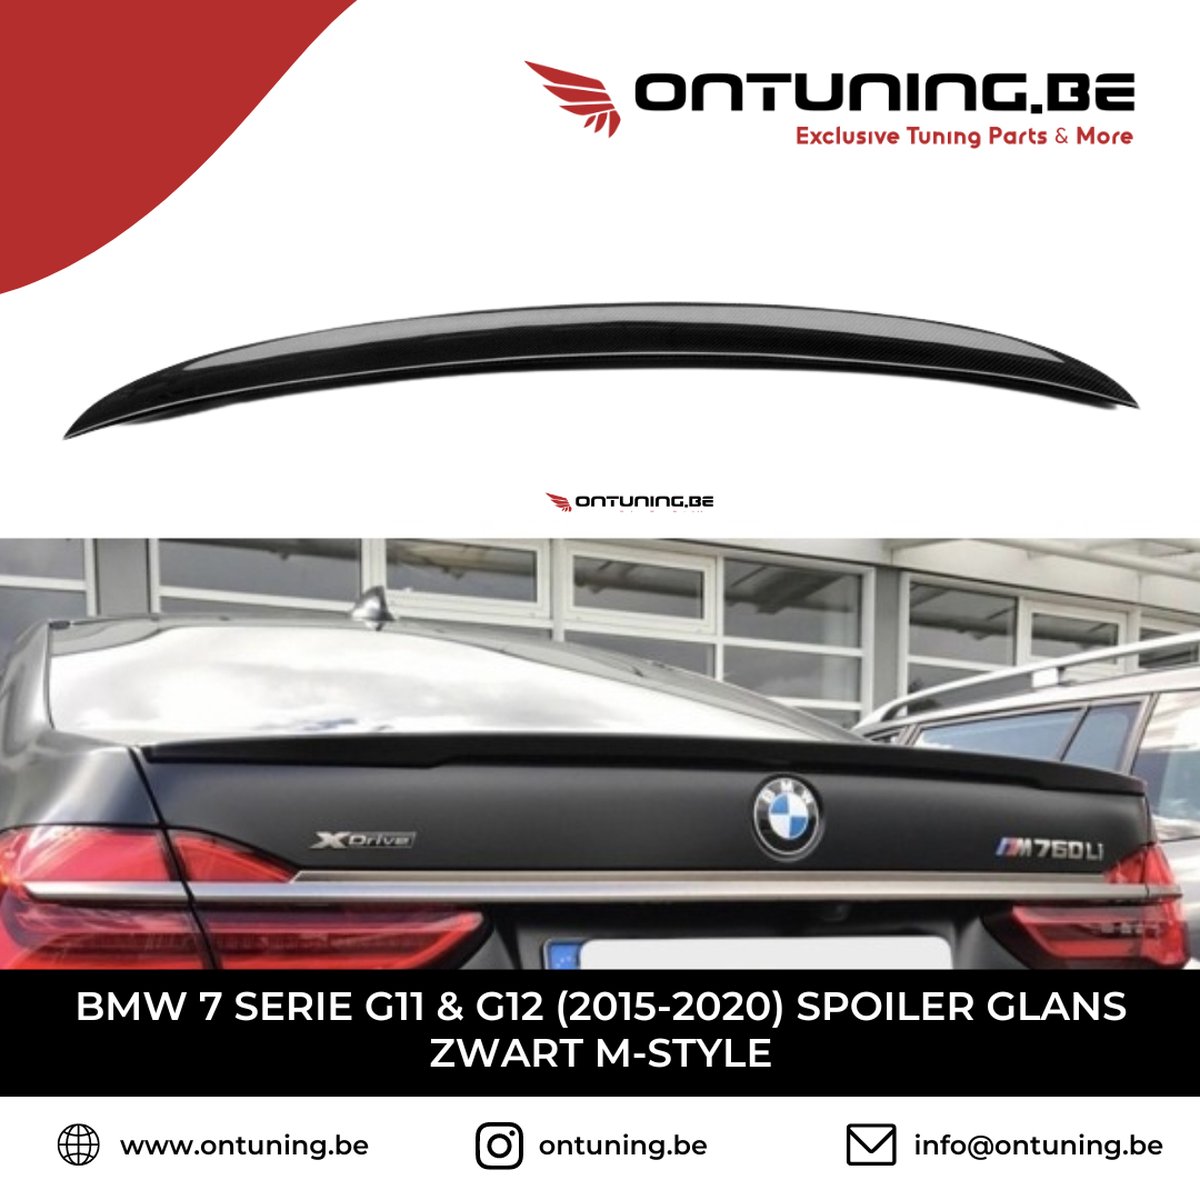 BMW 7 Serie G11 & G12 (2015-2020) Spoiler Glans Zwart M-Style